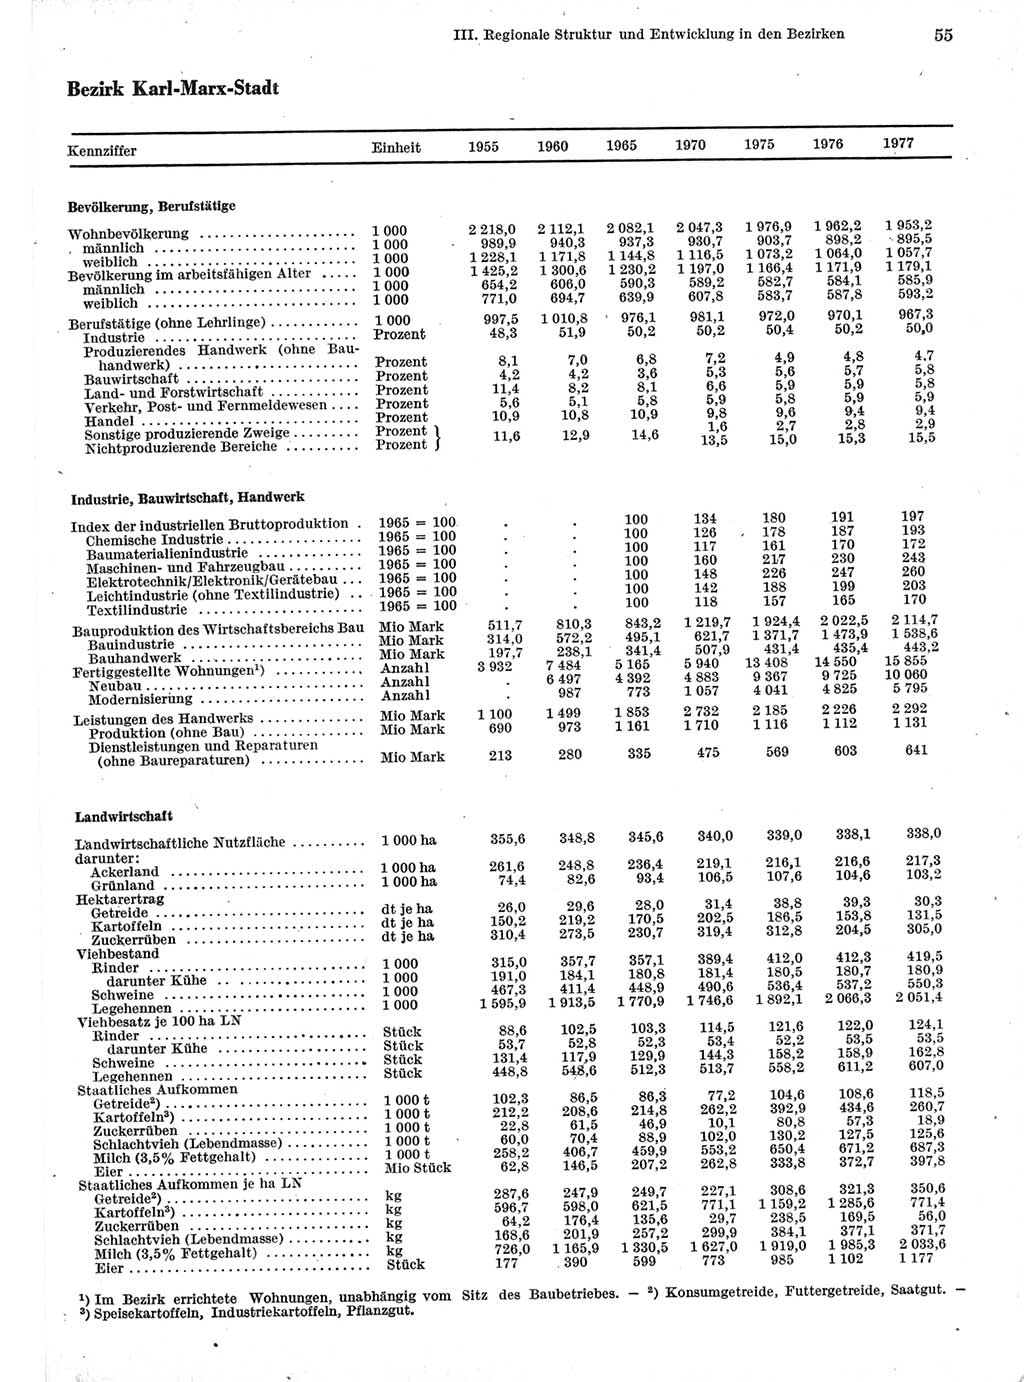 Statistisches Jahrbuch der Deutschen Demokratischen Republik (DDR) 1978, Seite 55 (Stat. Jb. DDR 1978, S. 55)